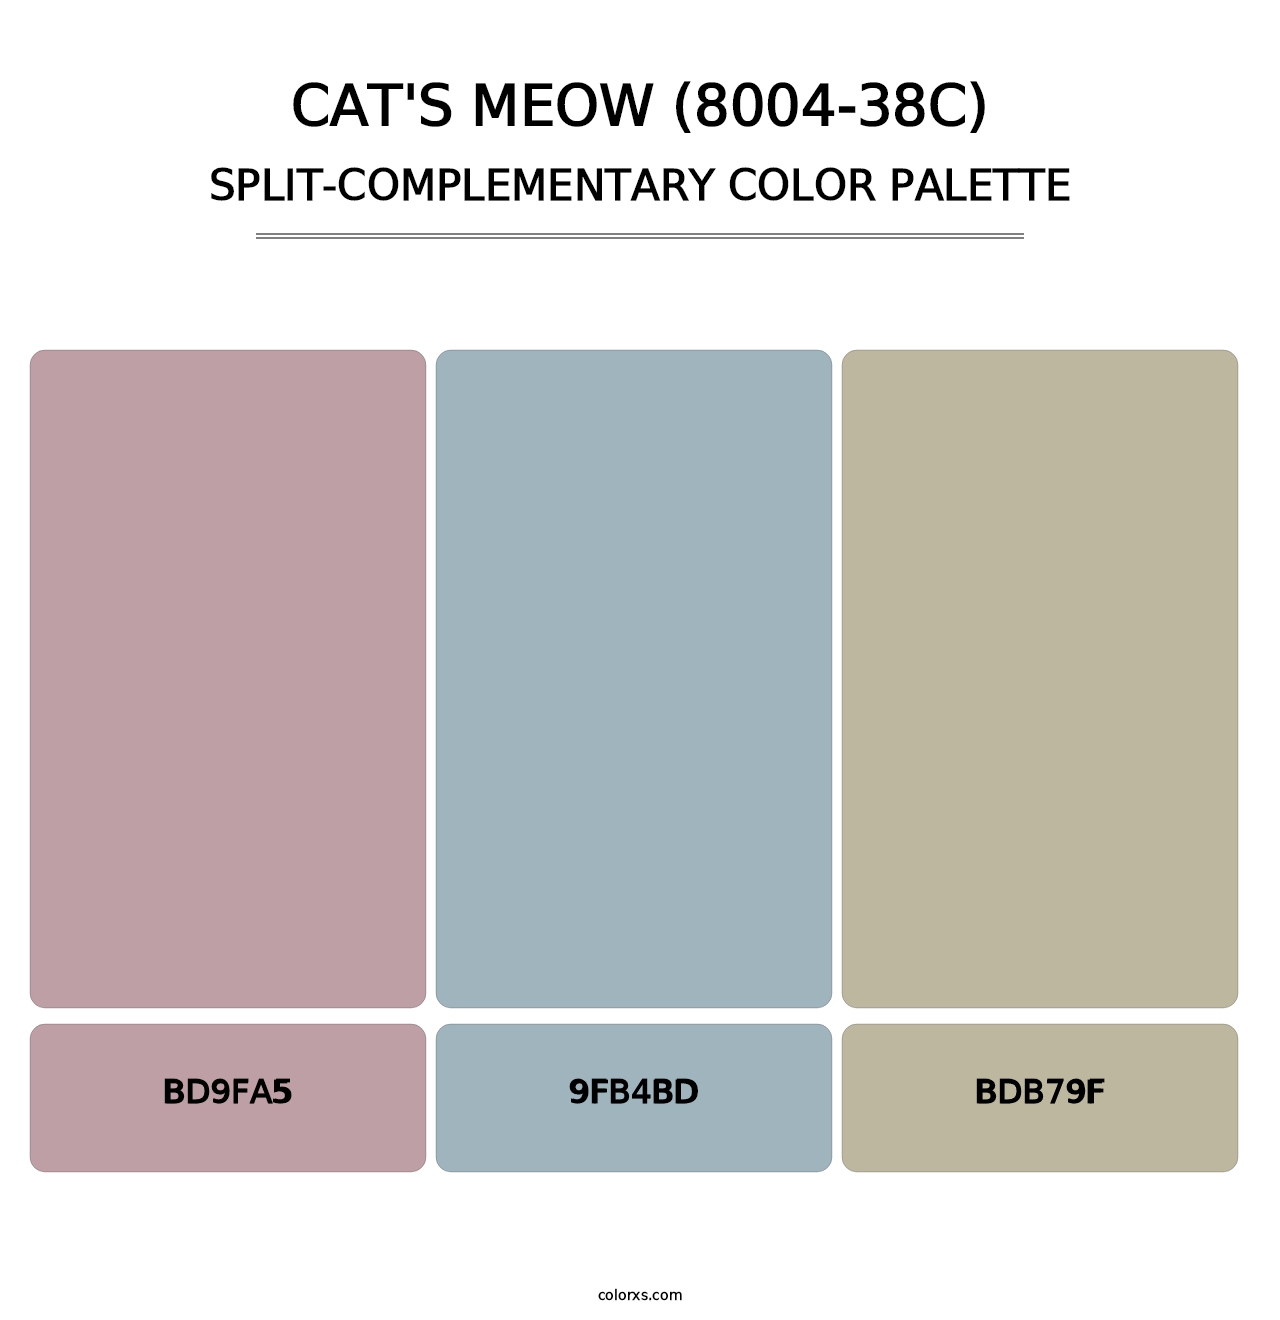 Cat's Meow (8004-38C) - Split-Complementary Color Palette